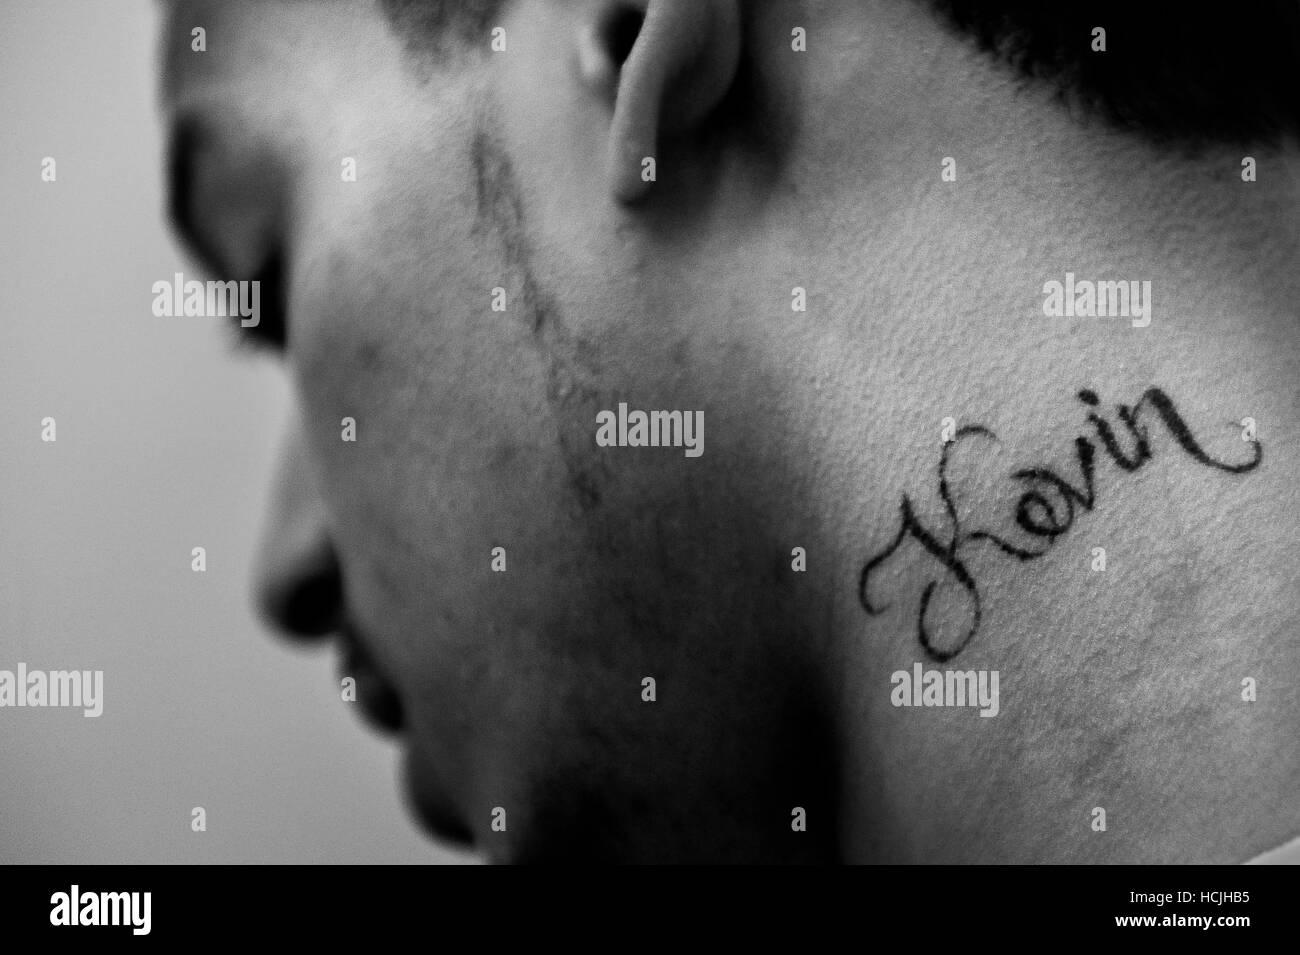 Un homme avec le nom Kevin tatoué sur son cou regarde son sens tout en parlant de la façon dont il a obtenu l'écart des gangs. Banque D'Images